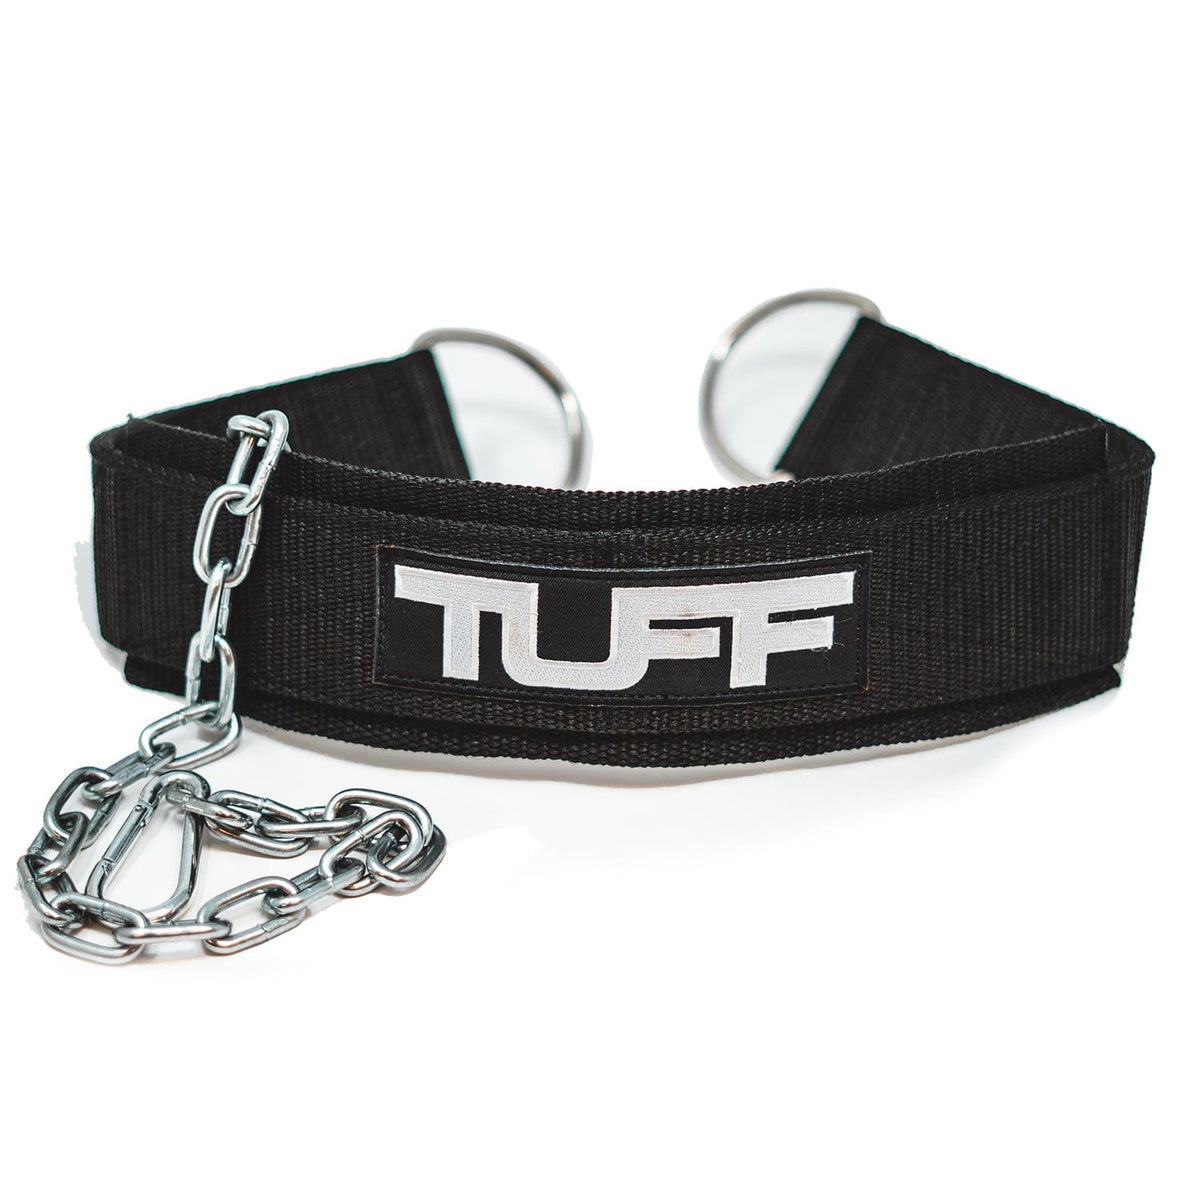 TUFF Dip Belt - Black TuffWraps.com